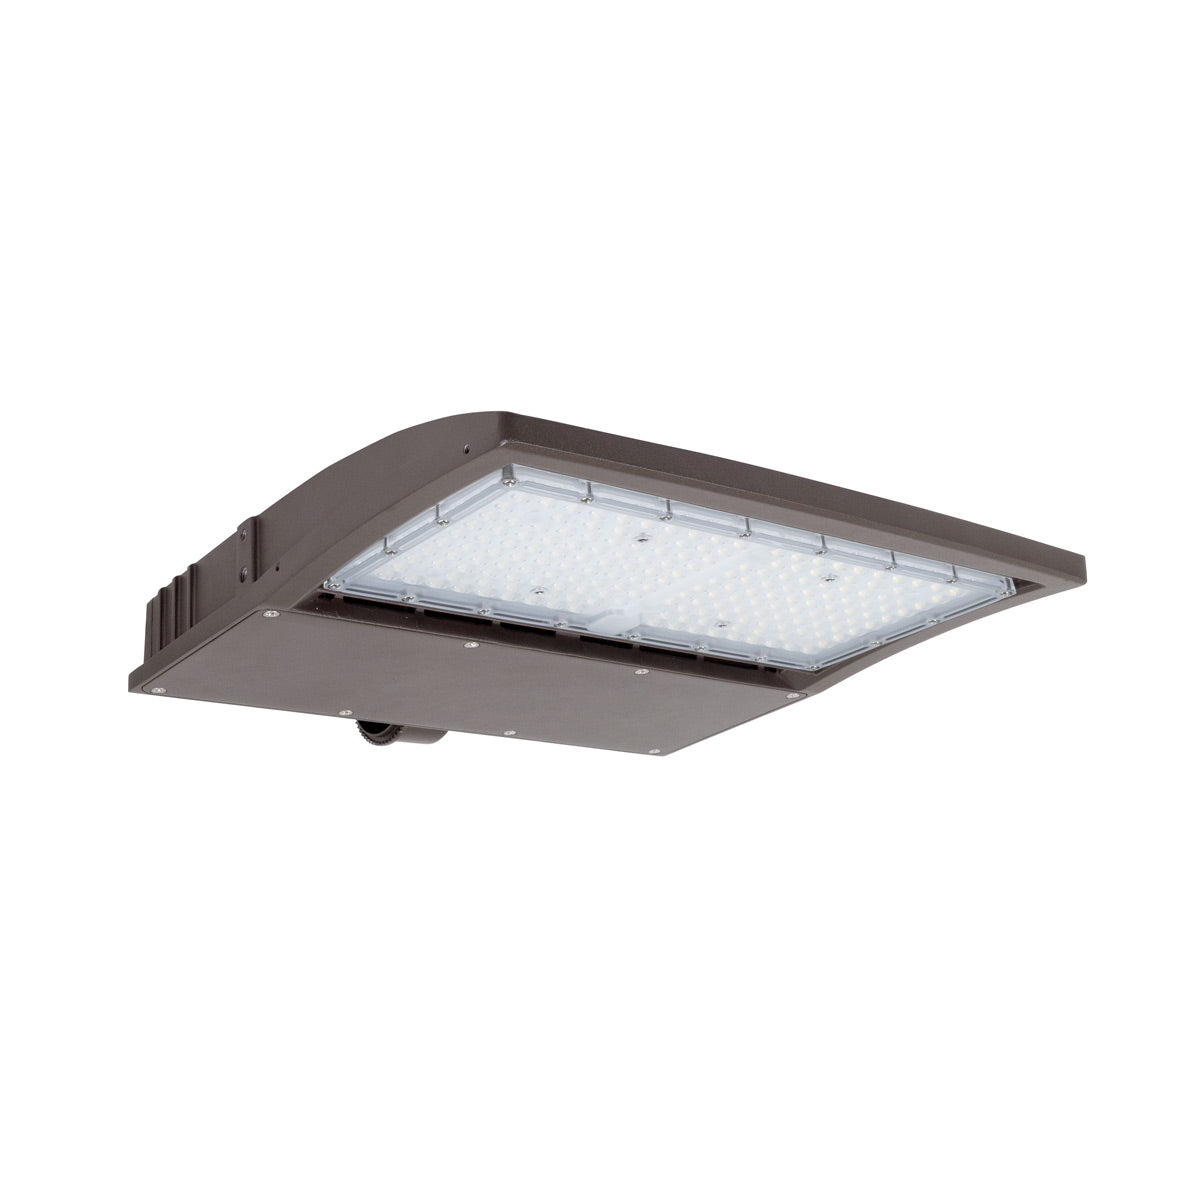 ECO LED Shoebox Area Light - 150W / 21,750 lumens